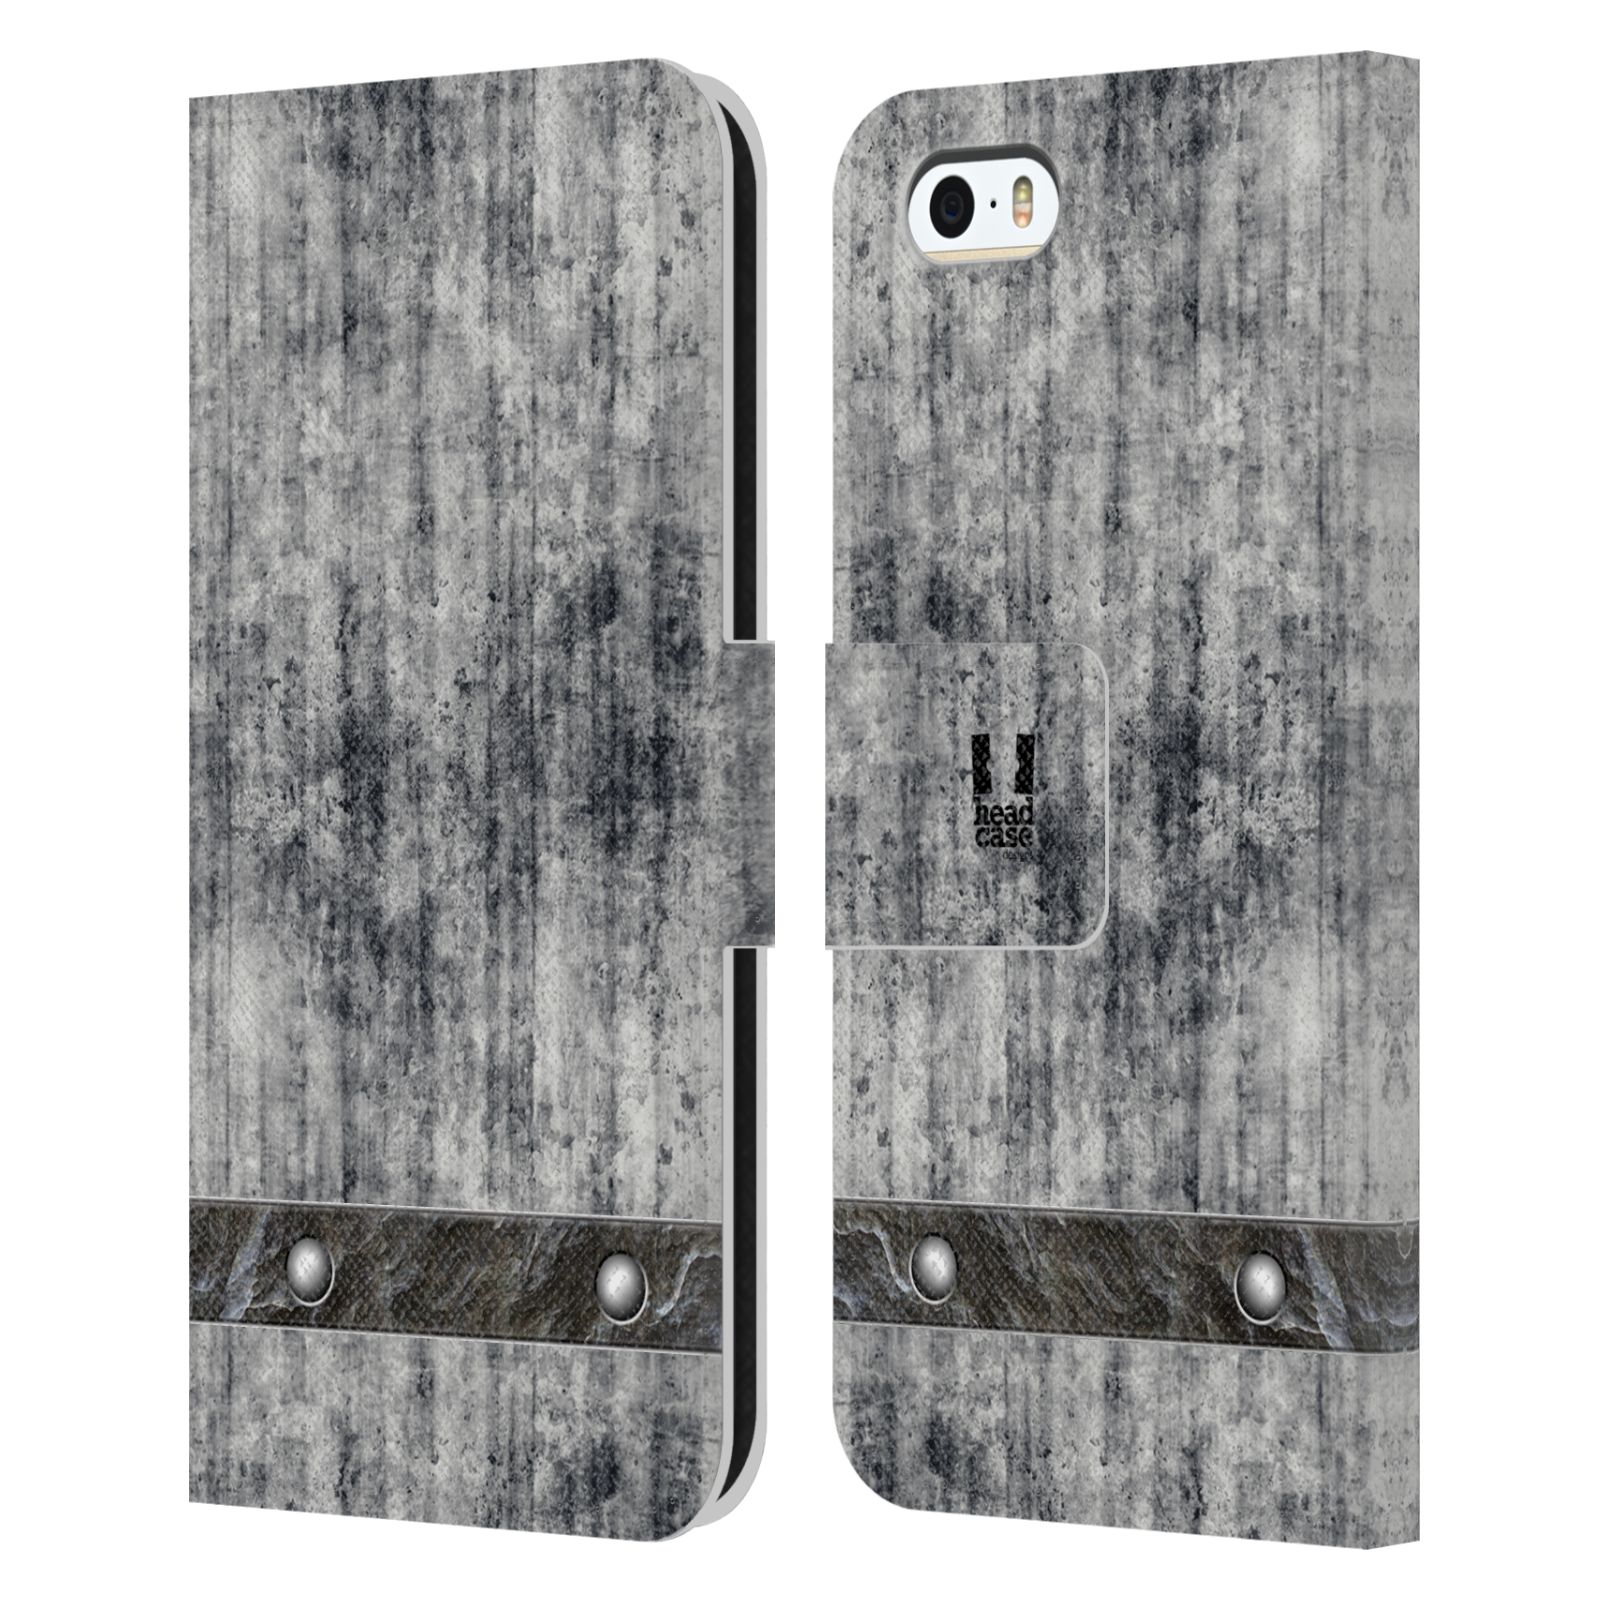 Pouzdro pro mobil Apple Iphone 5 / 5S / SE 2015 - Stavební textura šedý beton